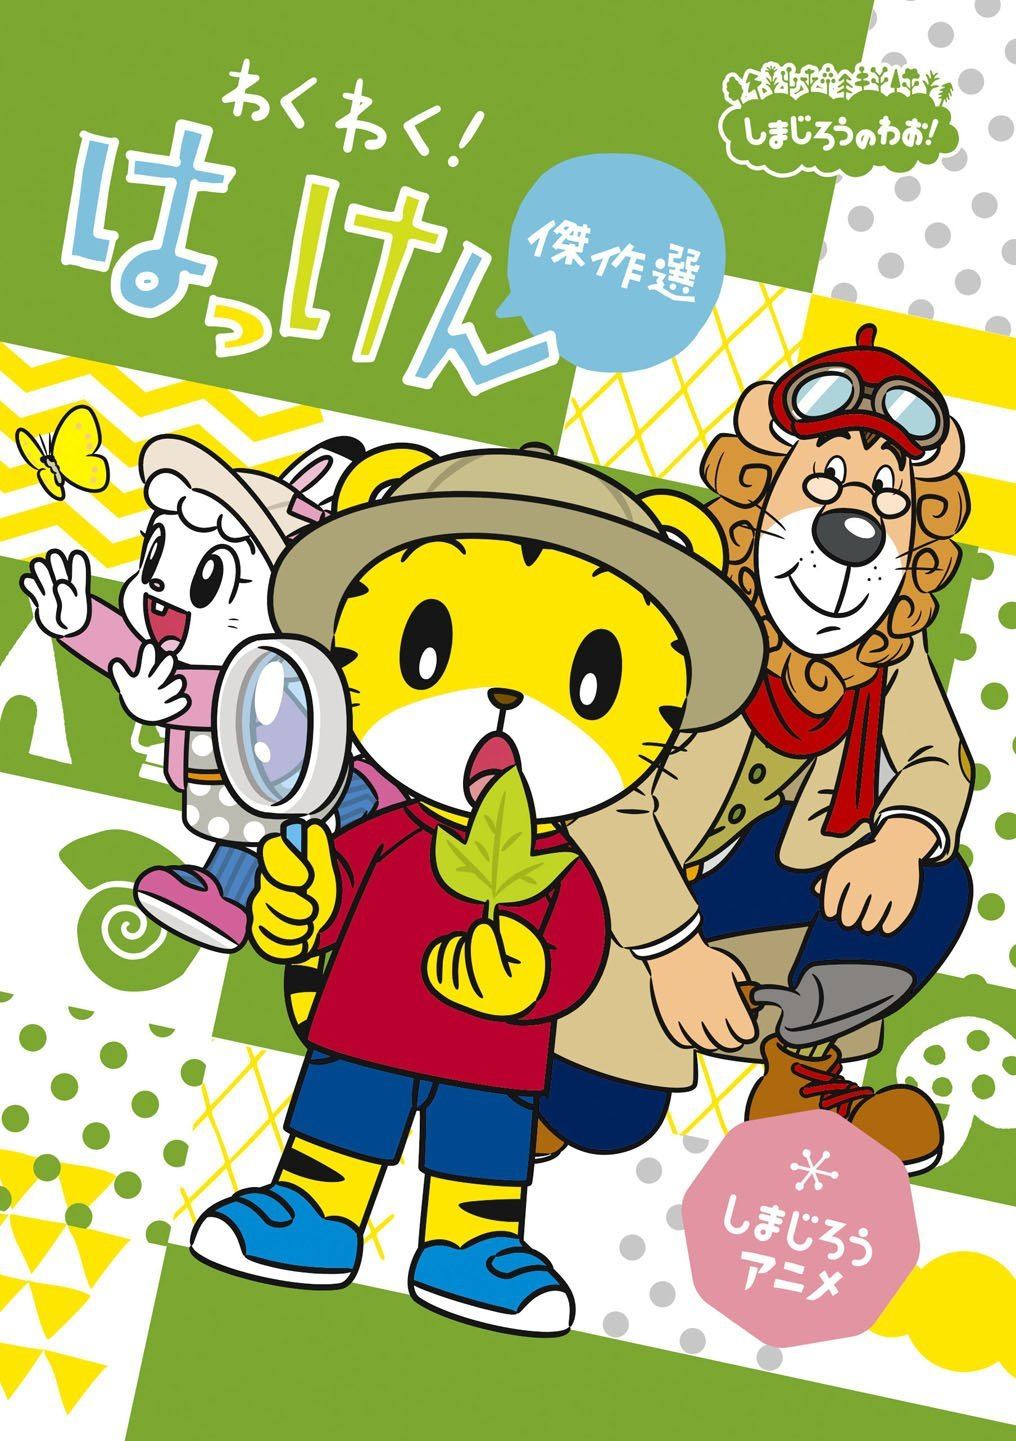 CDJapan : Shimajiro no Wao! Shimajiro Anime Shimajiro to 12 Kagetu -  Kisetsu no Gyoji - Ohanashi Kessaku Sen Special [Limited Release] Kids DVD